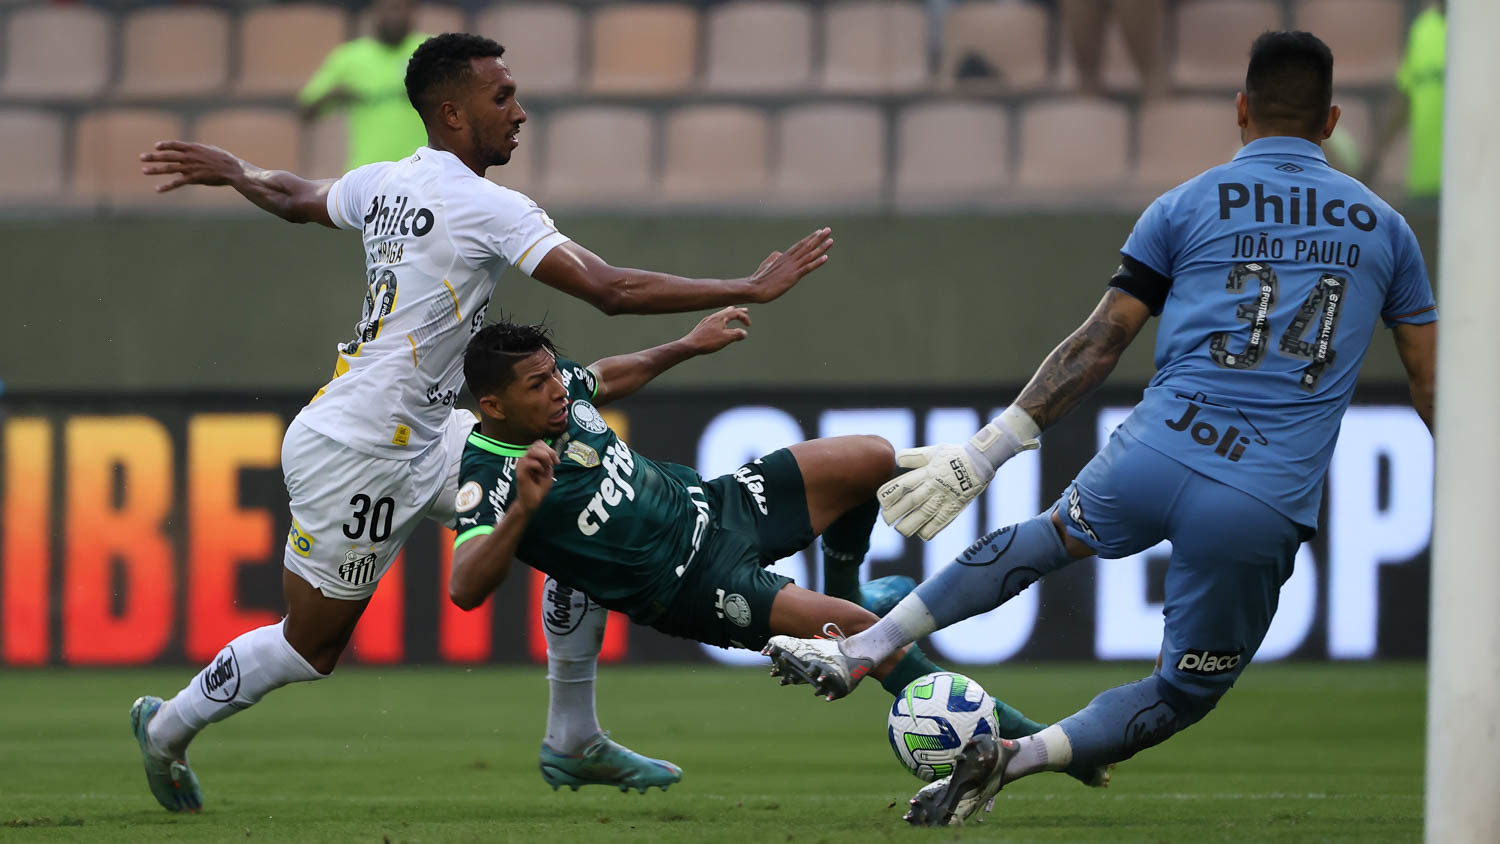 Venda de ingressos para clássico contra Santos na Arena Barueri pelo  Brasileirão – Palmeiras